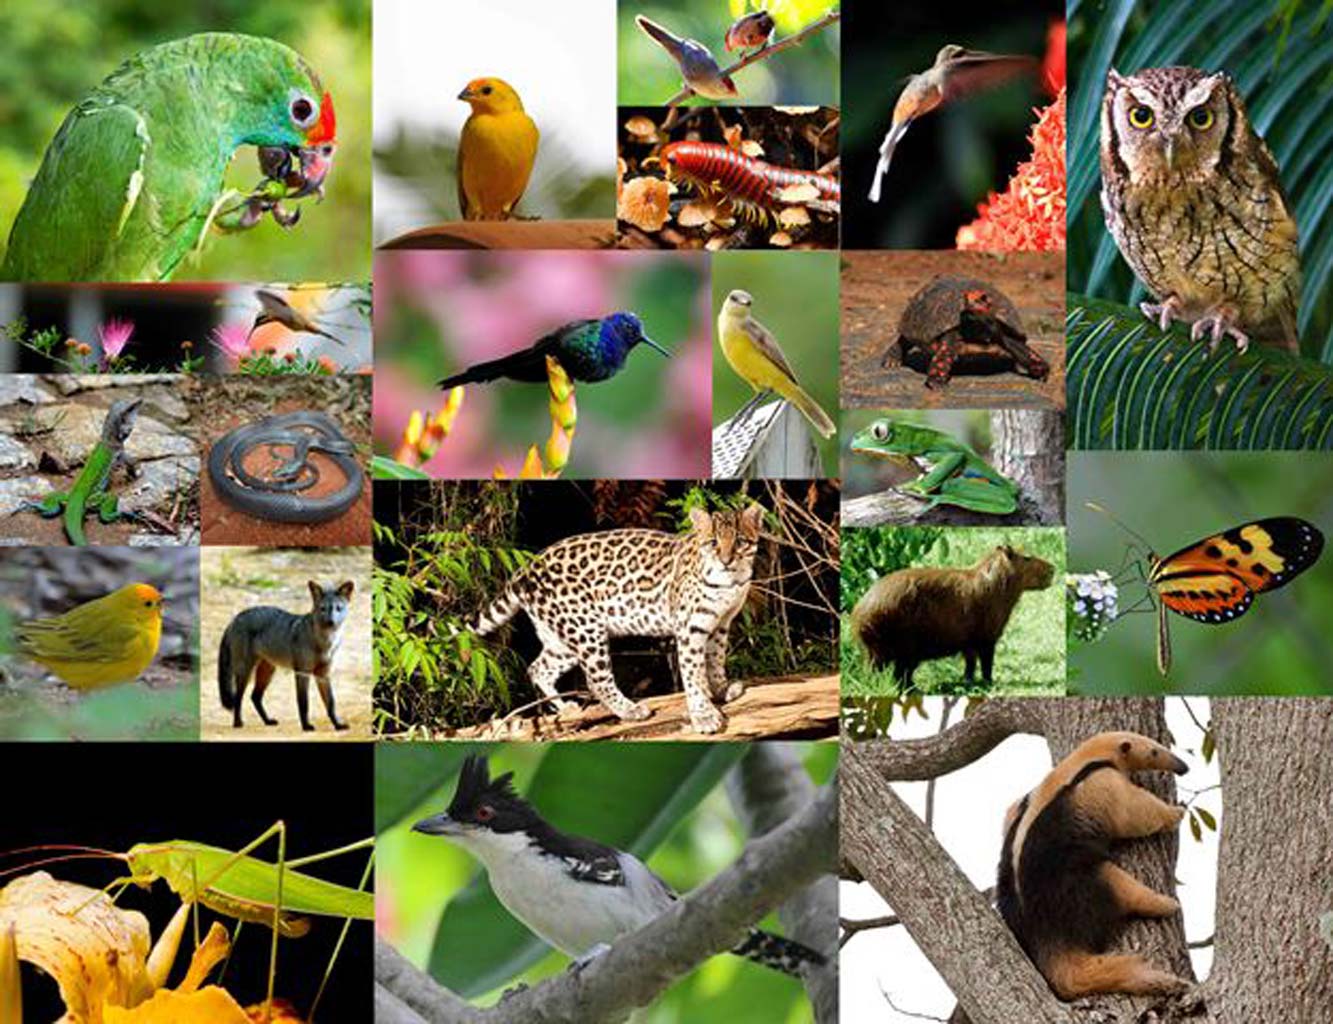 Meer dan 172  vogelsoorten zijn geïdentificeerd, waarvan er zes met uitsterven bedreigd zijn. Er zijn 33 soorten zoogdieren, waarvan er 2 als 'kwetsbaar' geclassificeerd worden. Er zijn ook 15 soorten amfibieën, 15 soorten reptielen en 293 soorten planten.